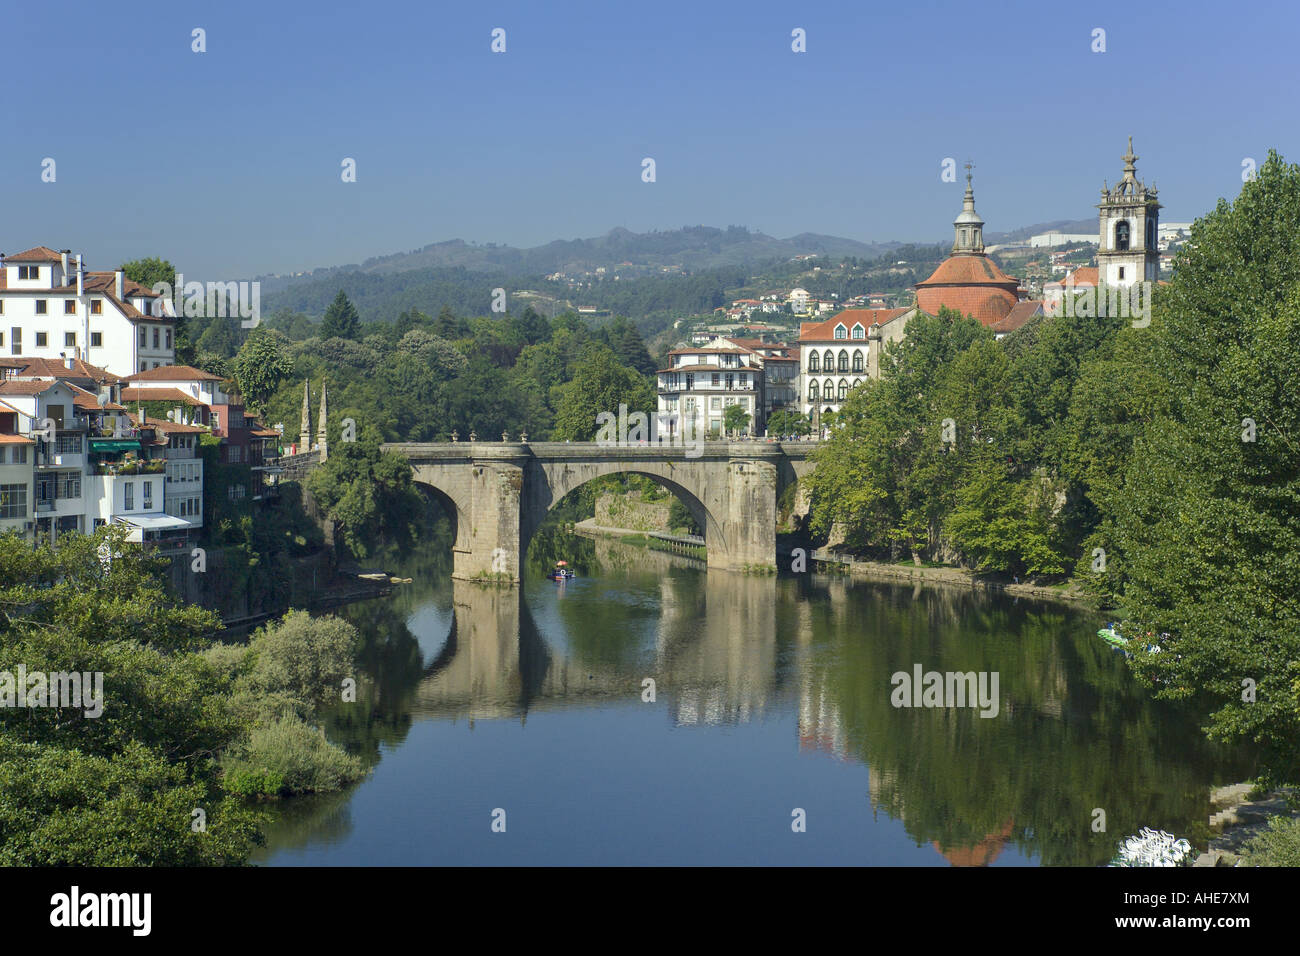 Portugal, Costa Verde, amarante, vieille ville historique et le pont Banque D'Images